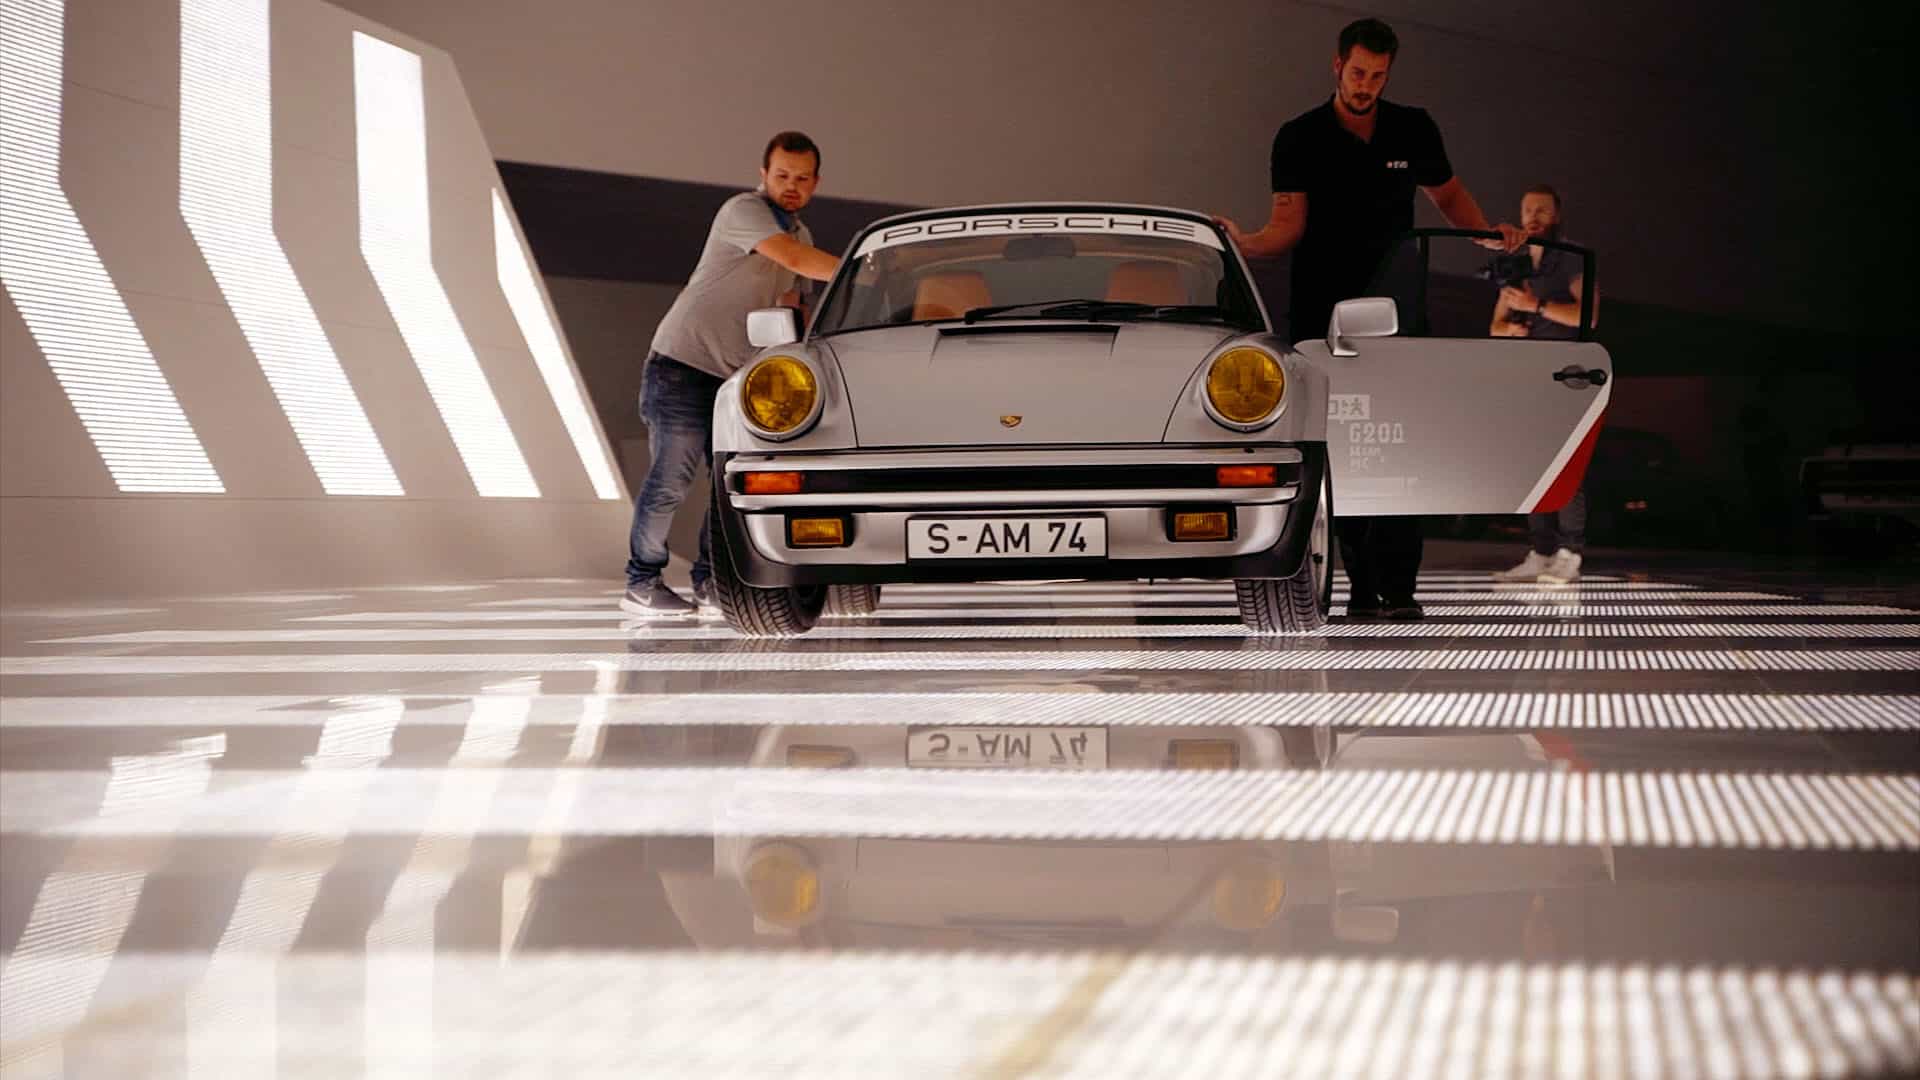 Porsche x Cyberpunk 2077 Kampagnenfilm, Behind the scenes Vorbereitung - Filmproduktion hawkins.film